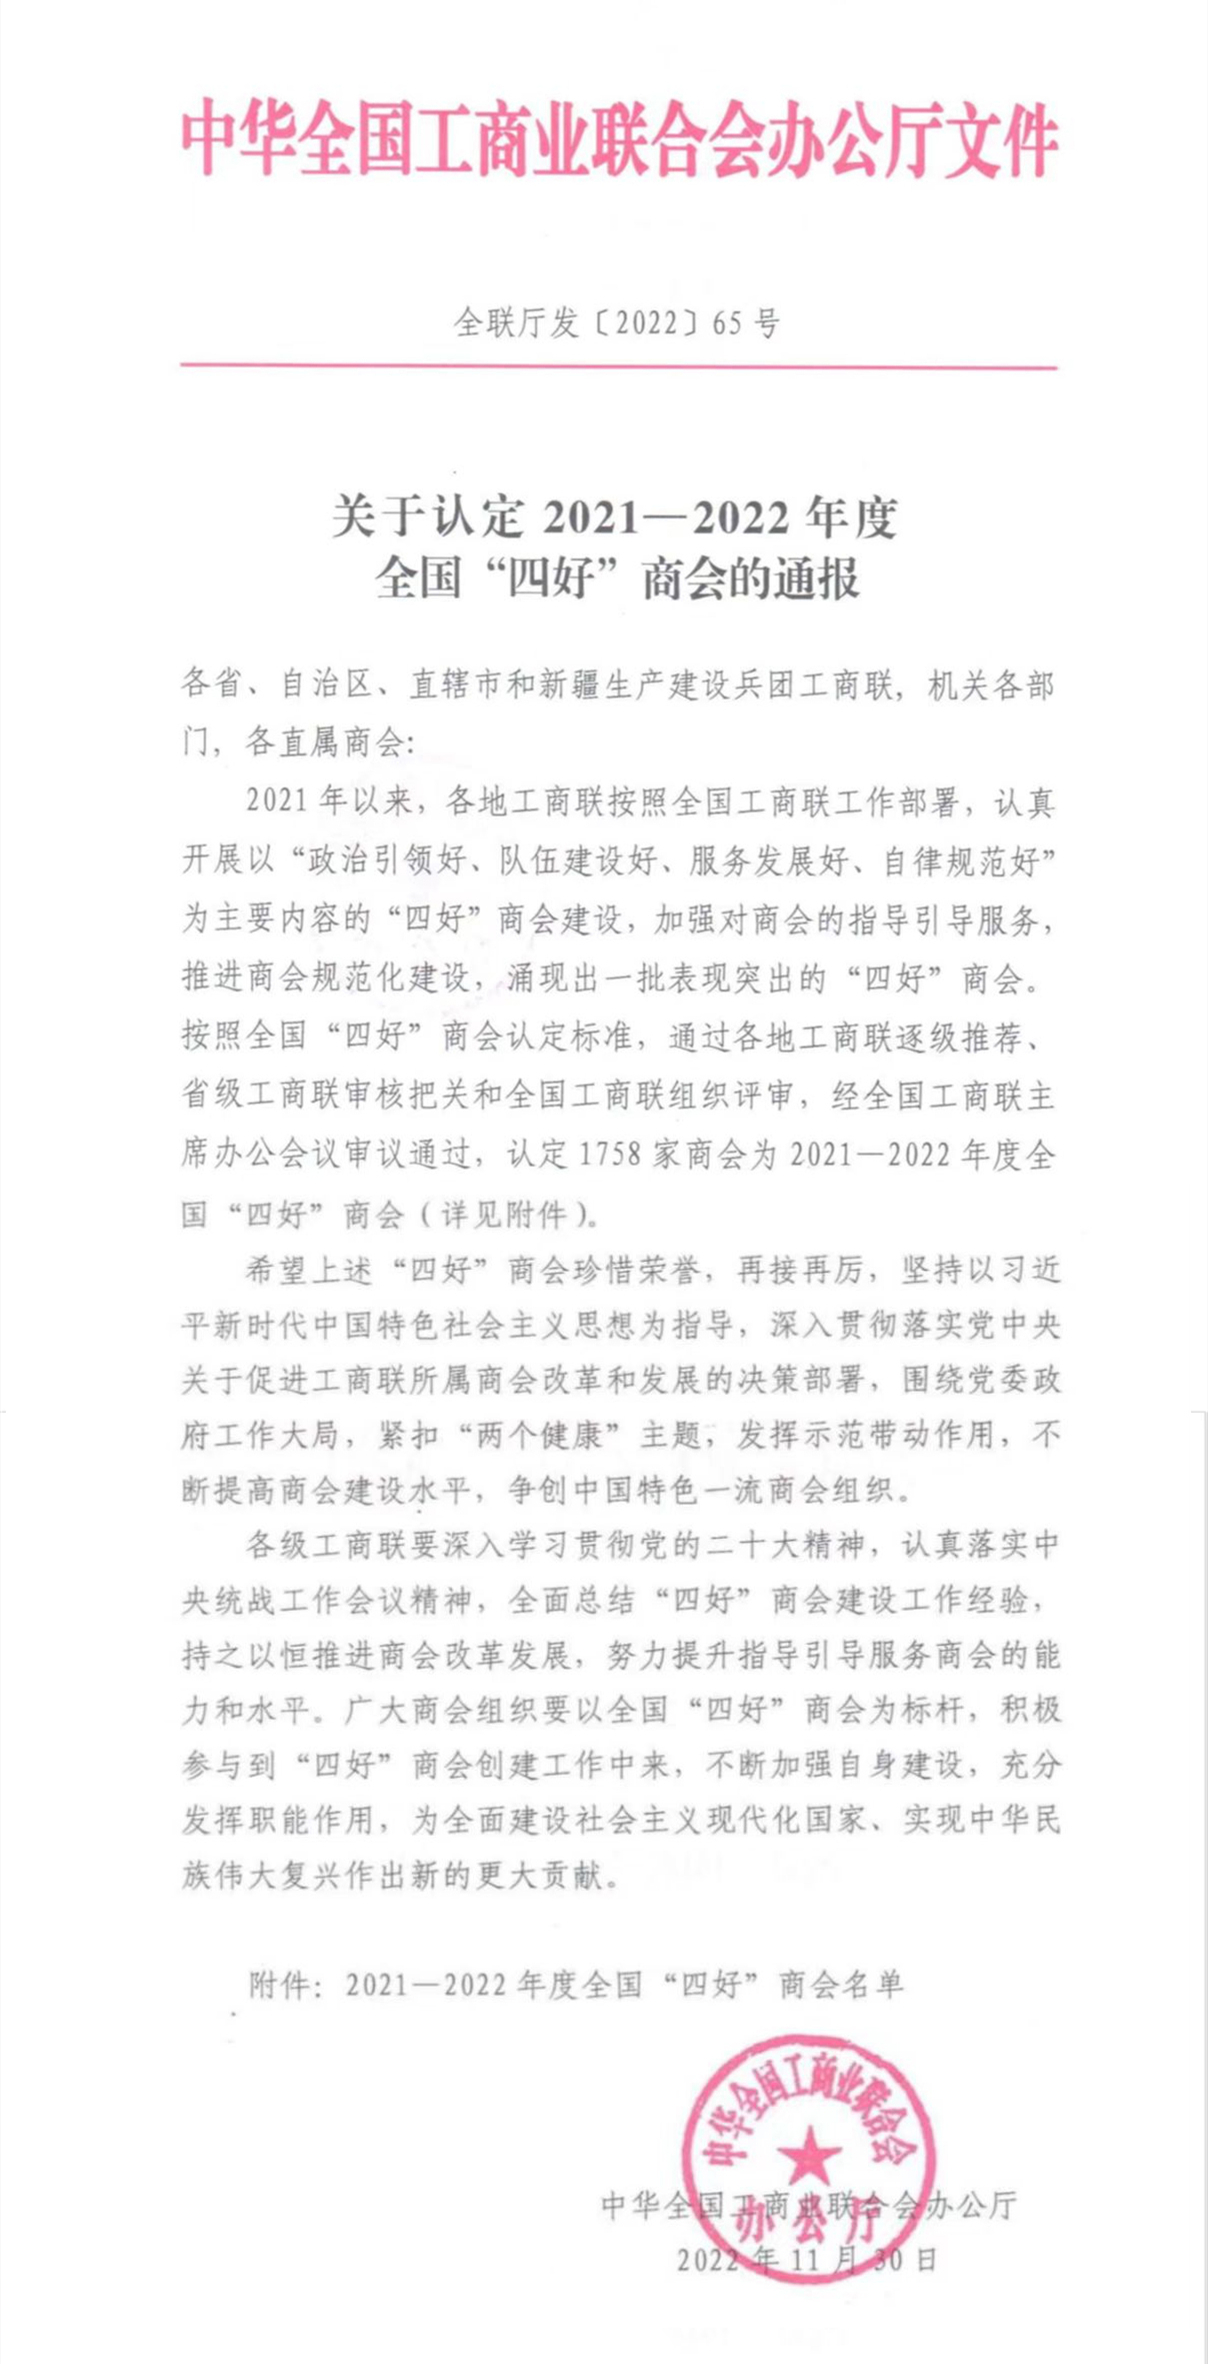 热烈祝贺黑龙江省潮汕商会 荣获2021-2022年度全国工商联“四好”称号